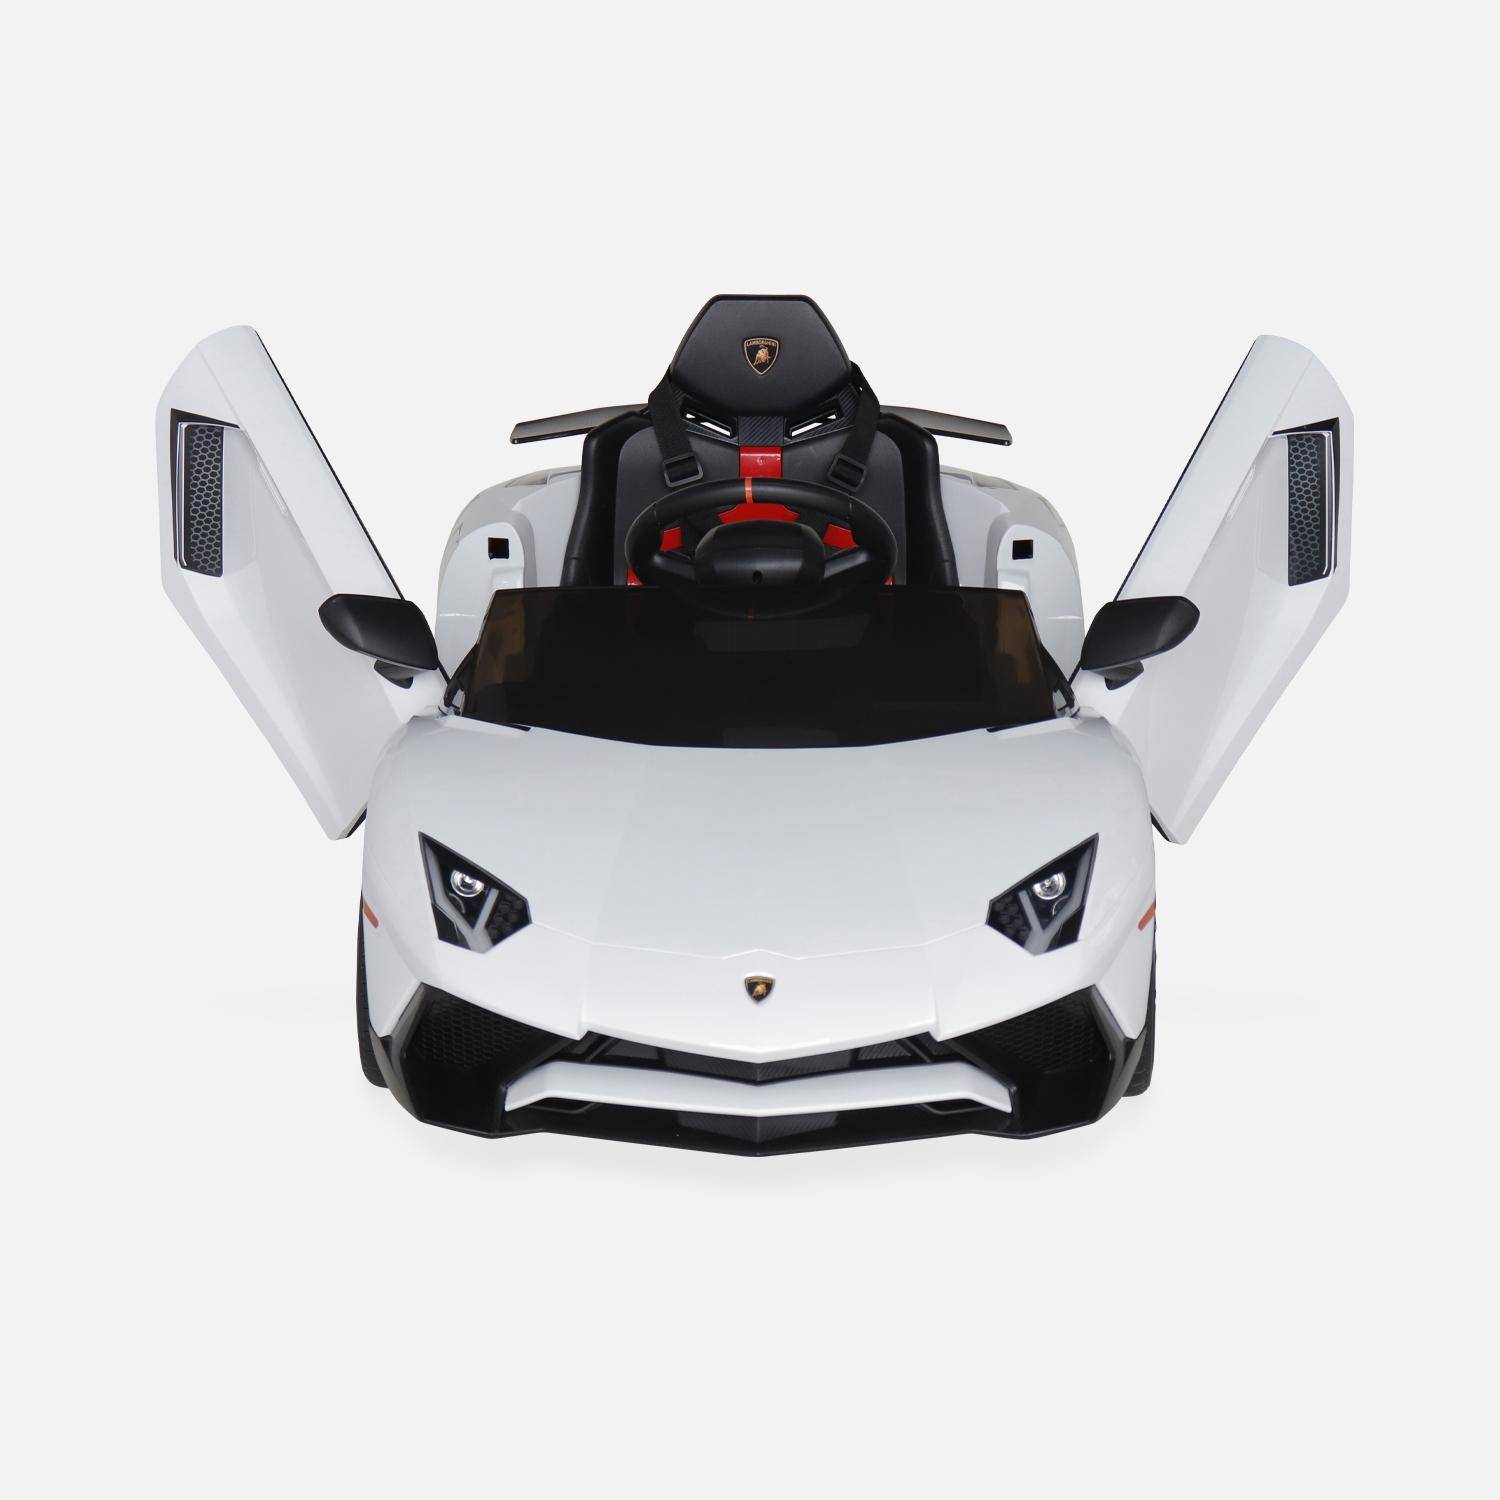 Voiture électrique 12V pour enfant Lamborghini, blanc, 1 place, avec autoradio, télécommande, MP3, port USB et phares fonctionnels Photo6